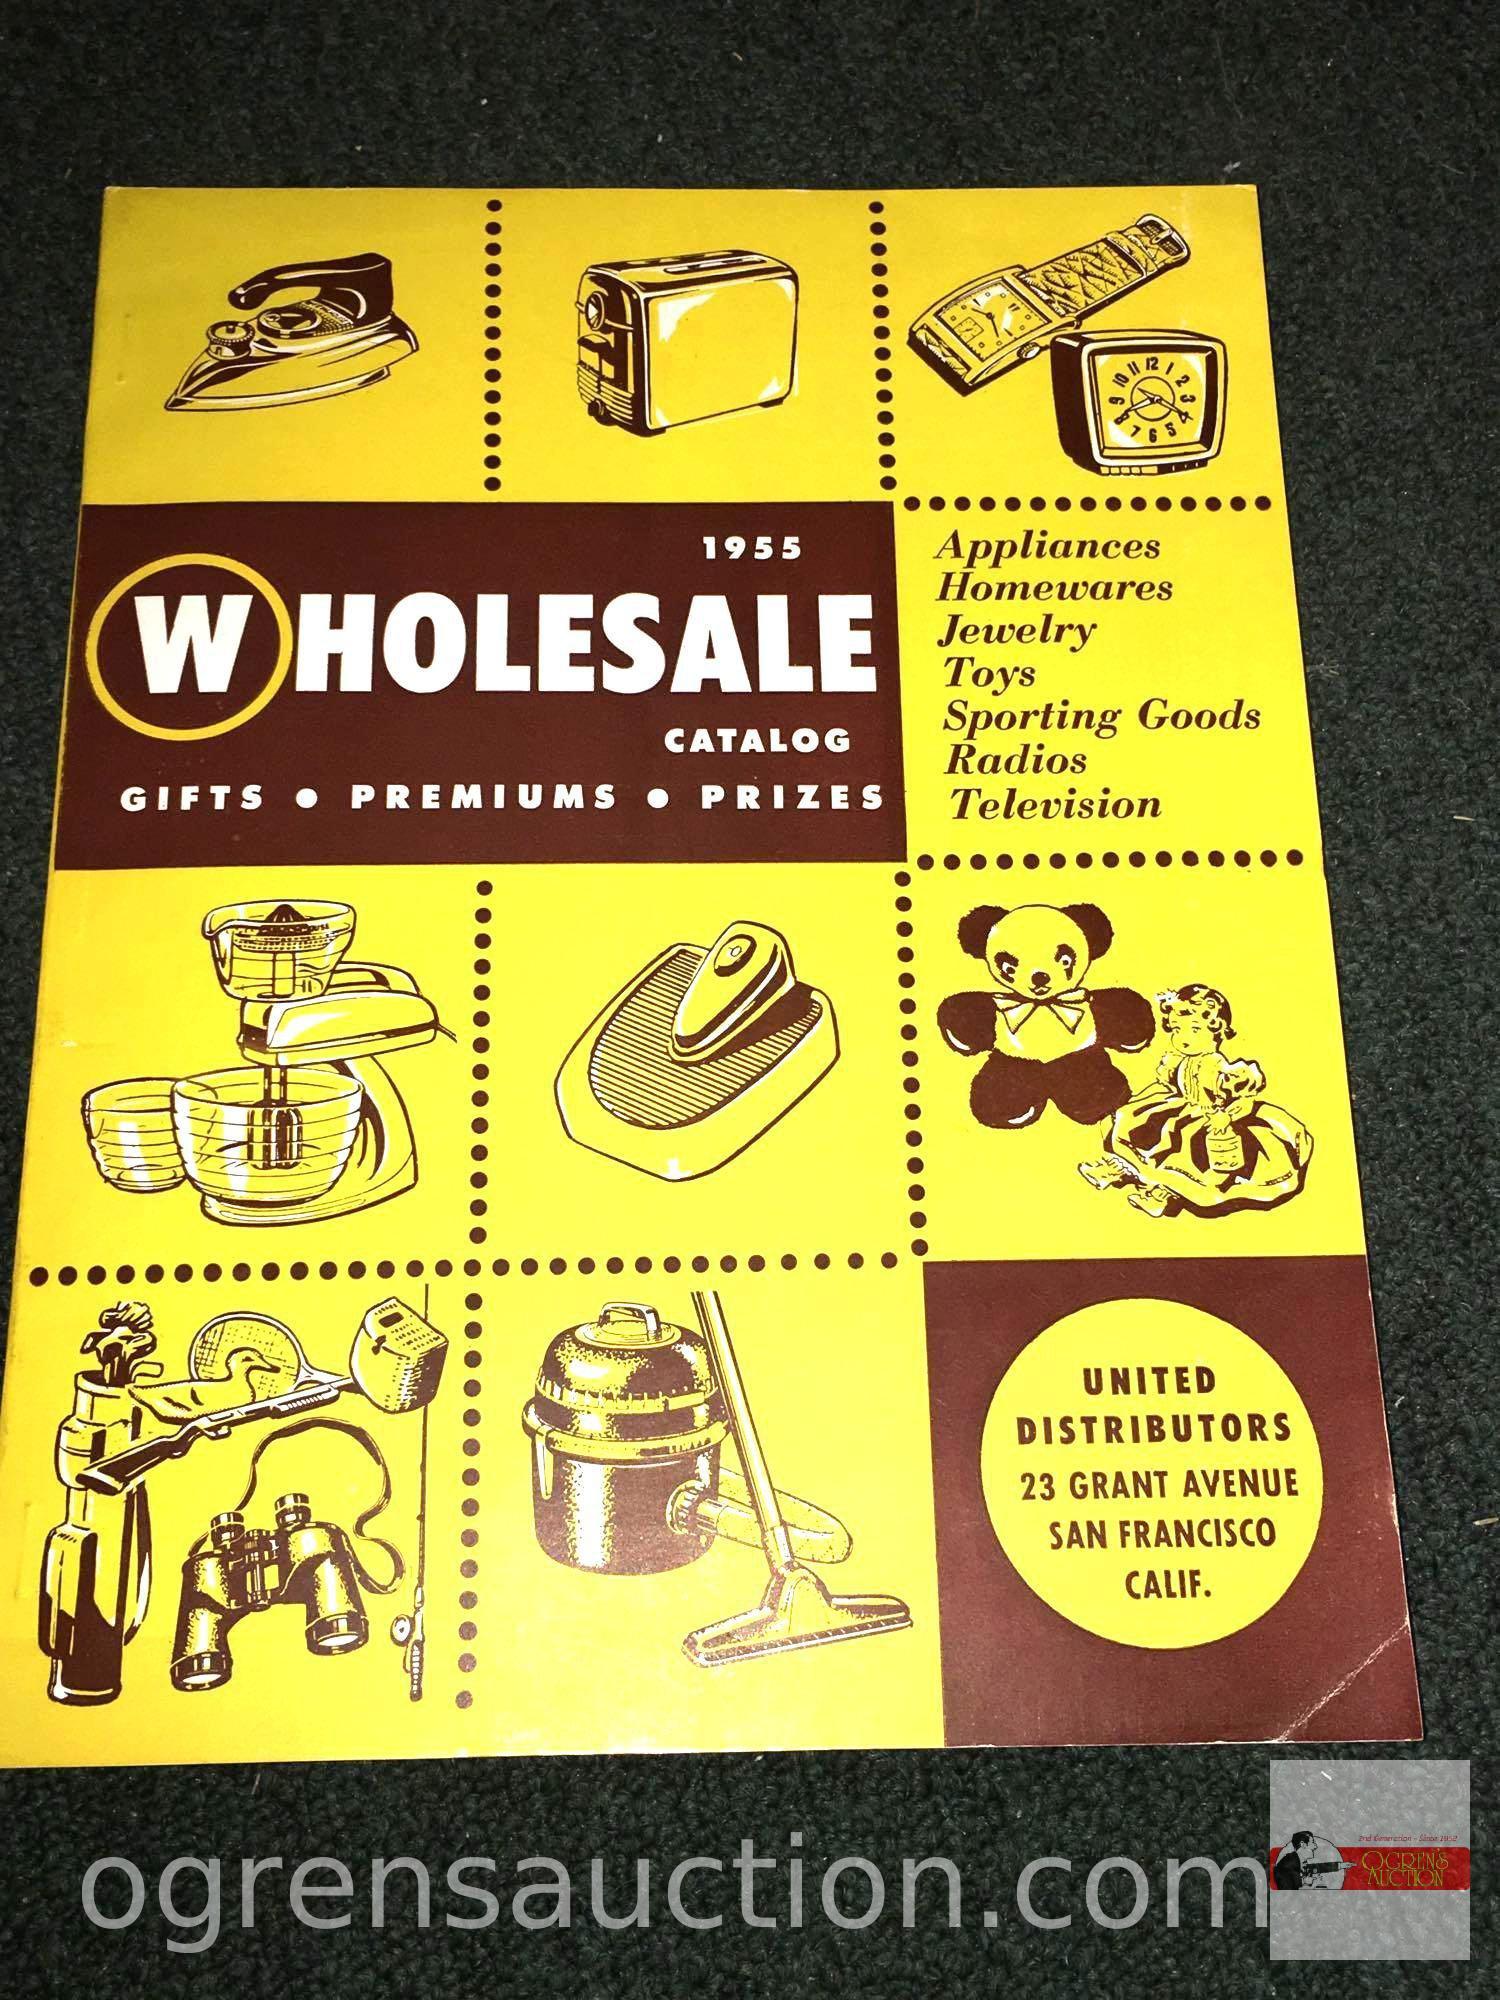 Books - 4 catalogs - 2-1950 Hobbies, 1955 Wholesale Catalog & 1952 Antique Journal